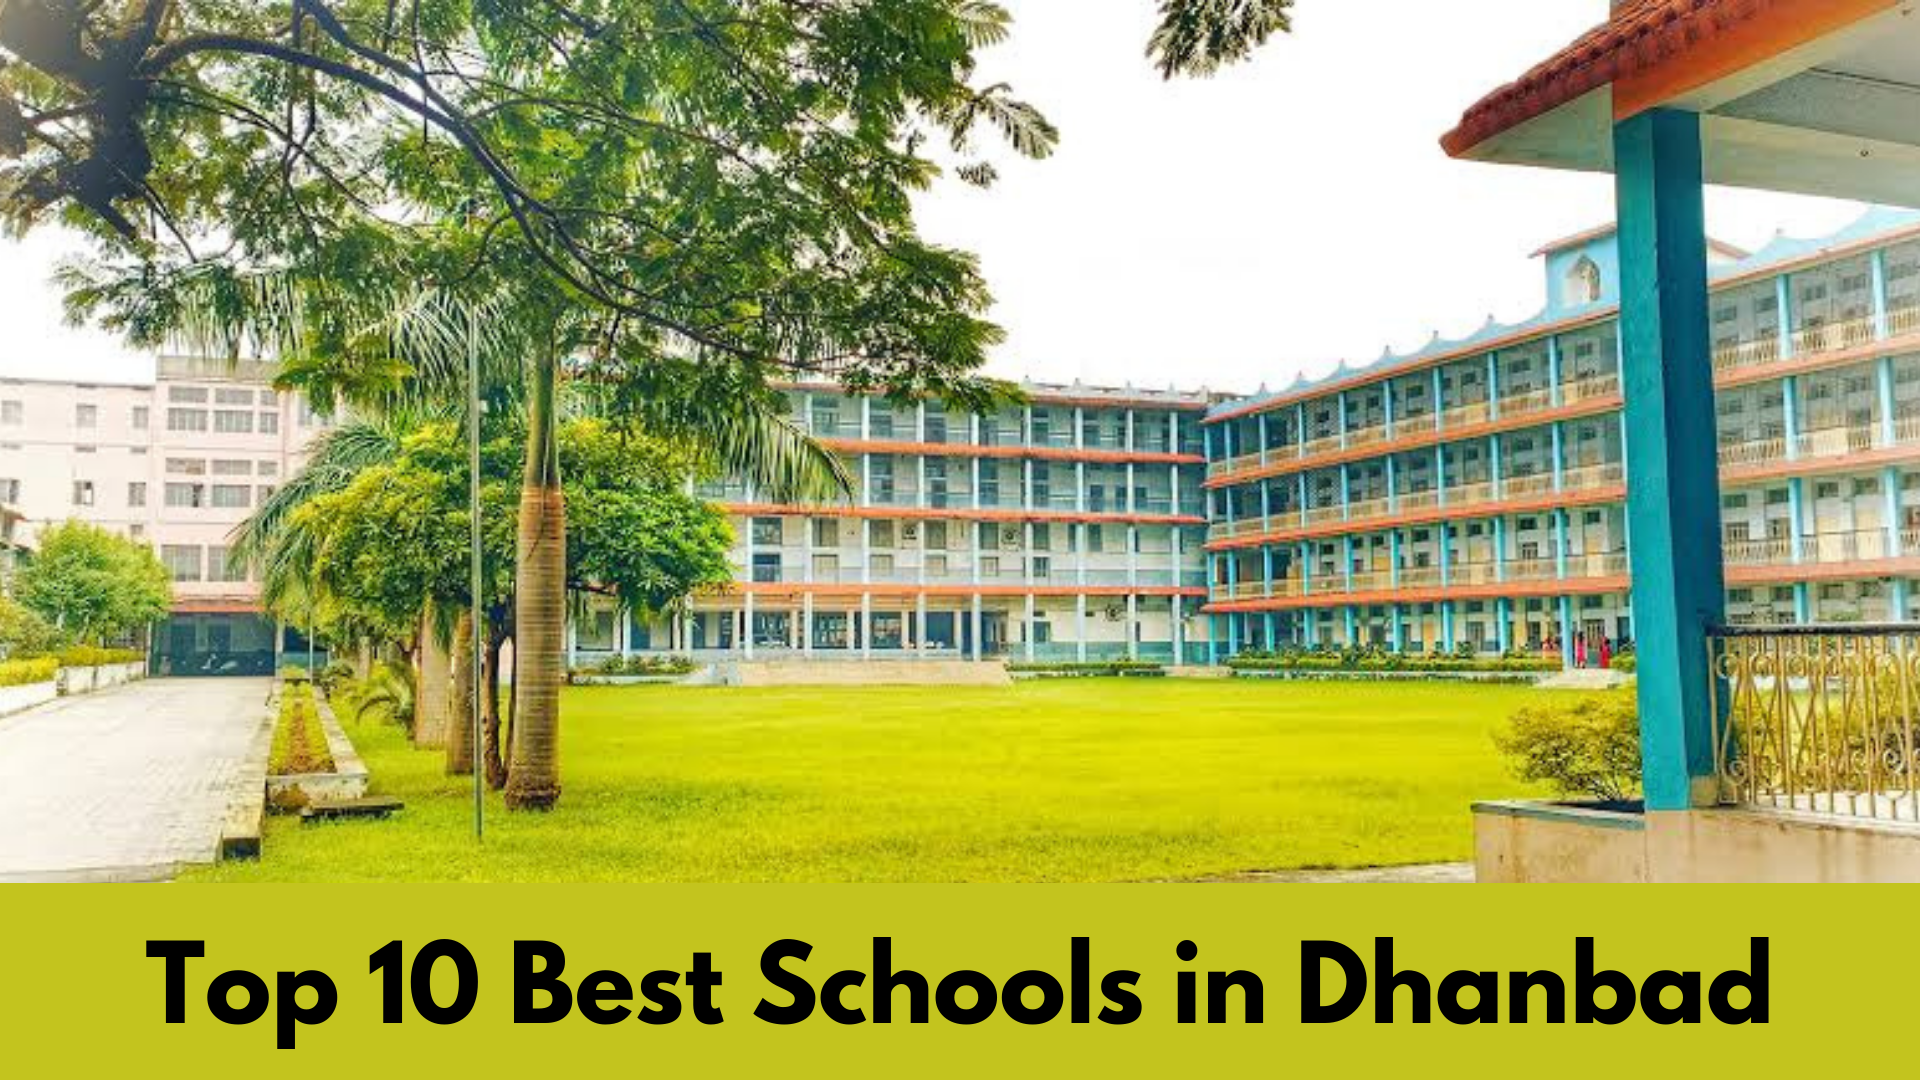 Top 10 Best Schools in Dhanbad